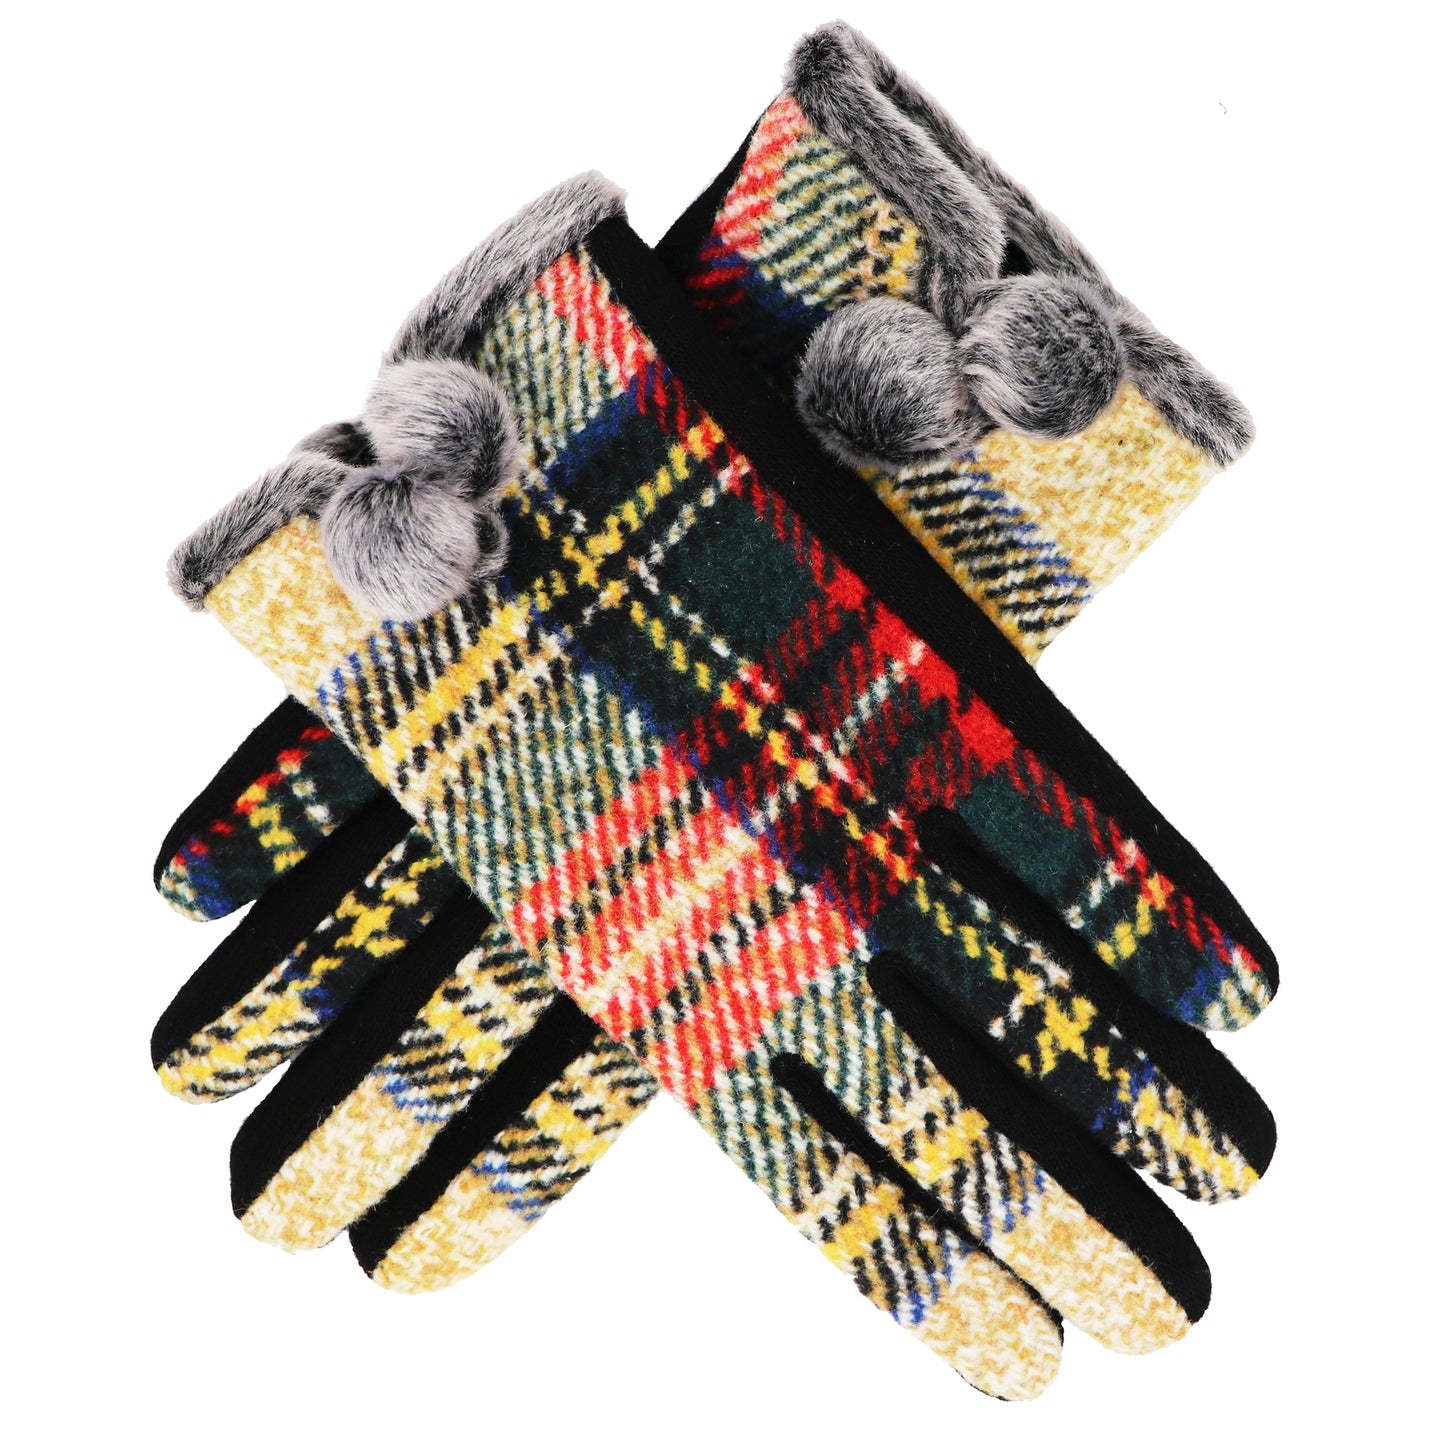 Children’s Tartan Gloves, Soft Warm touch